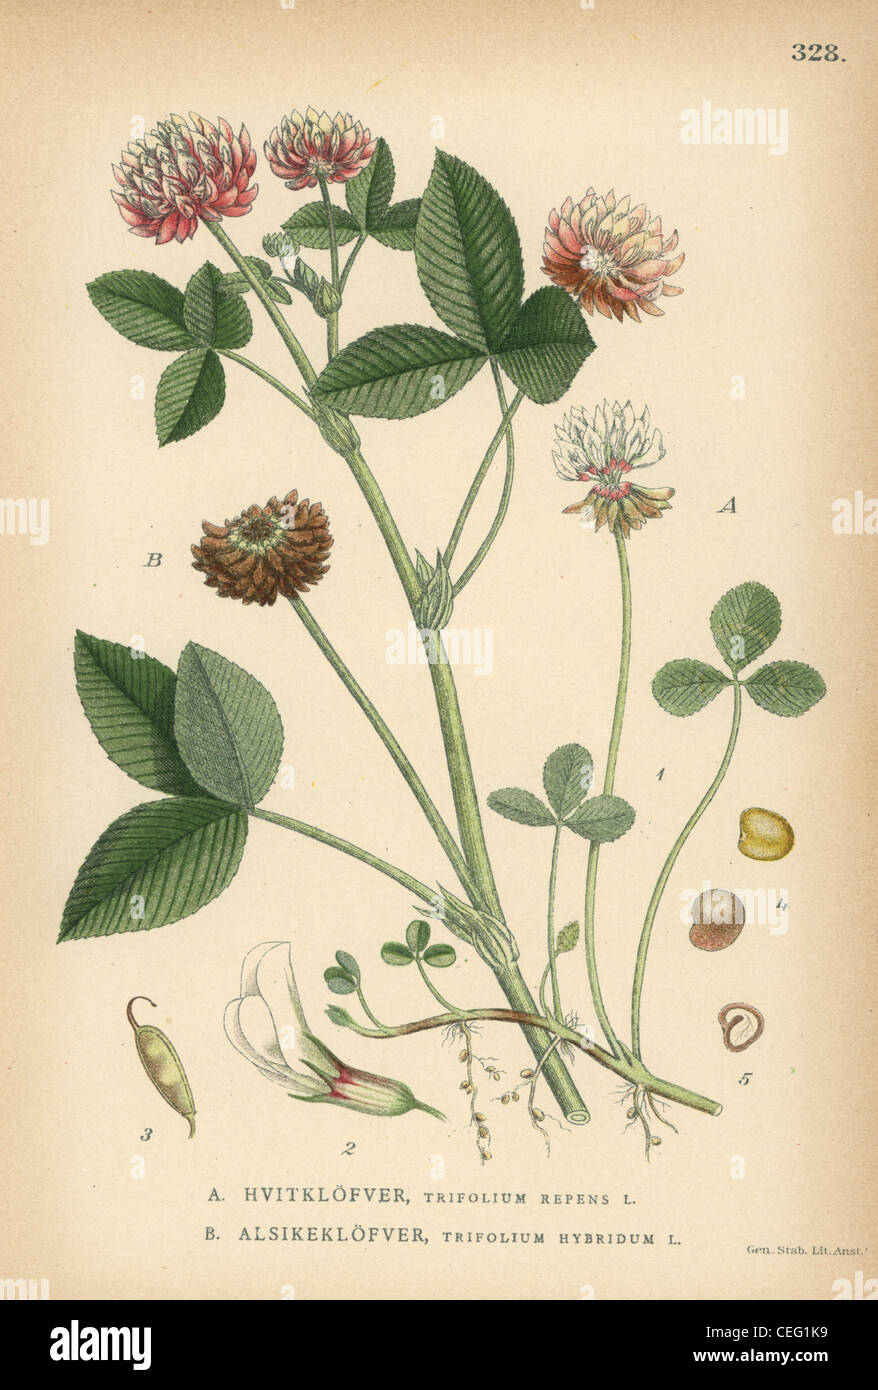 White clover, Trifolium repens, and alsike clover, Trifolium hybridum. Stock Photo